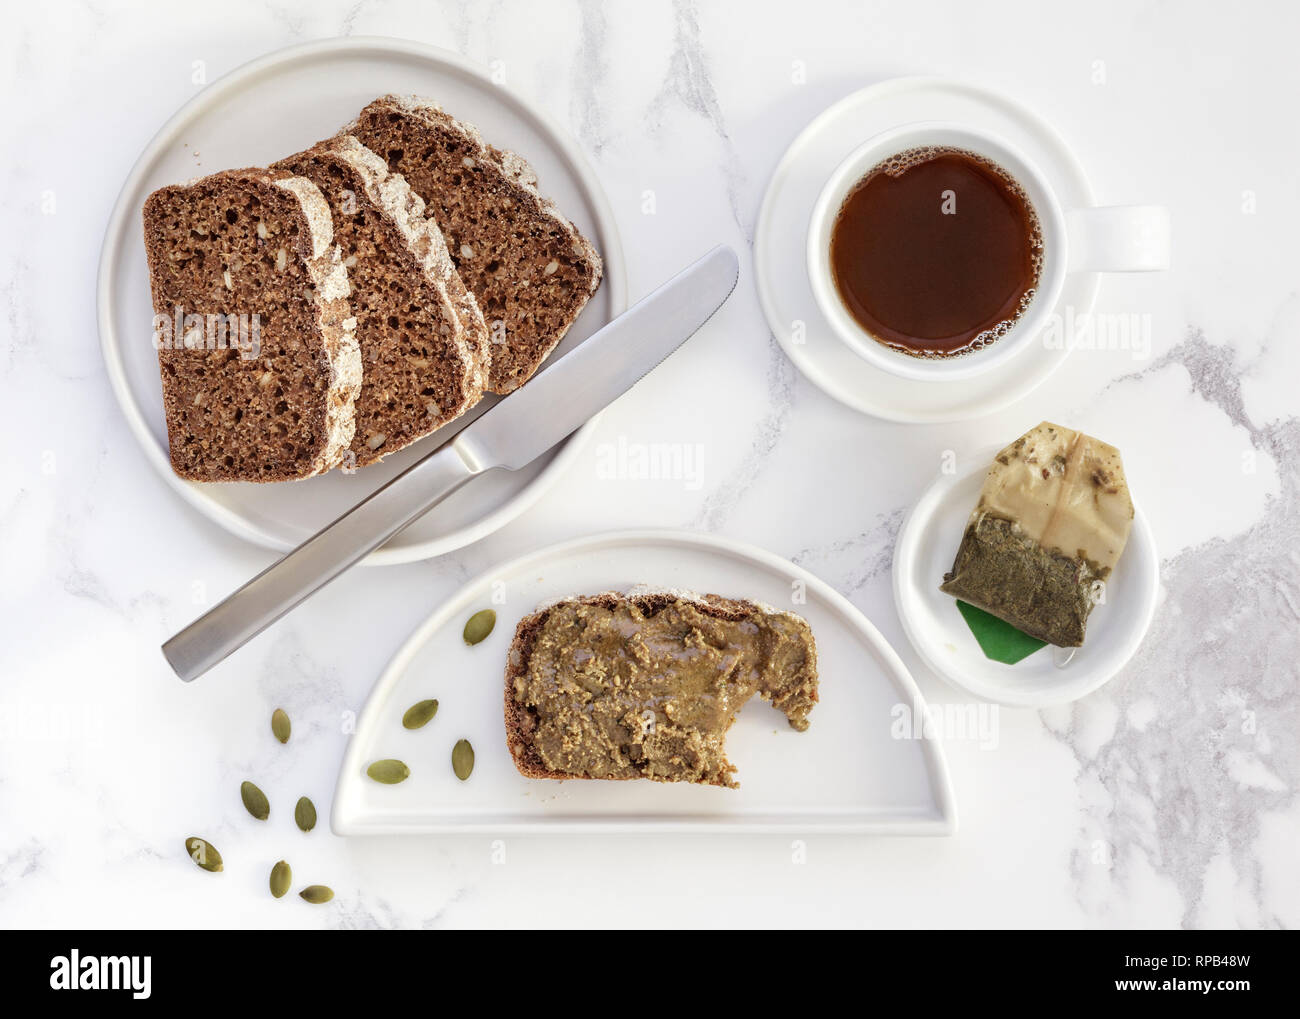 Ryebread casero con propagación de semillas de calabaza y una taza de té verde Foto de stock